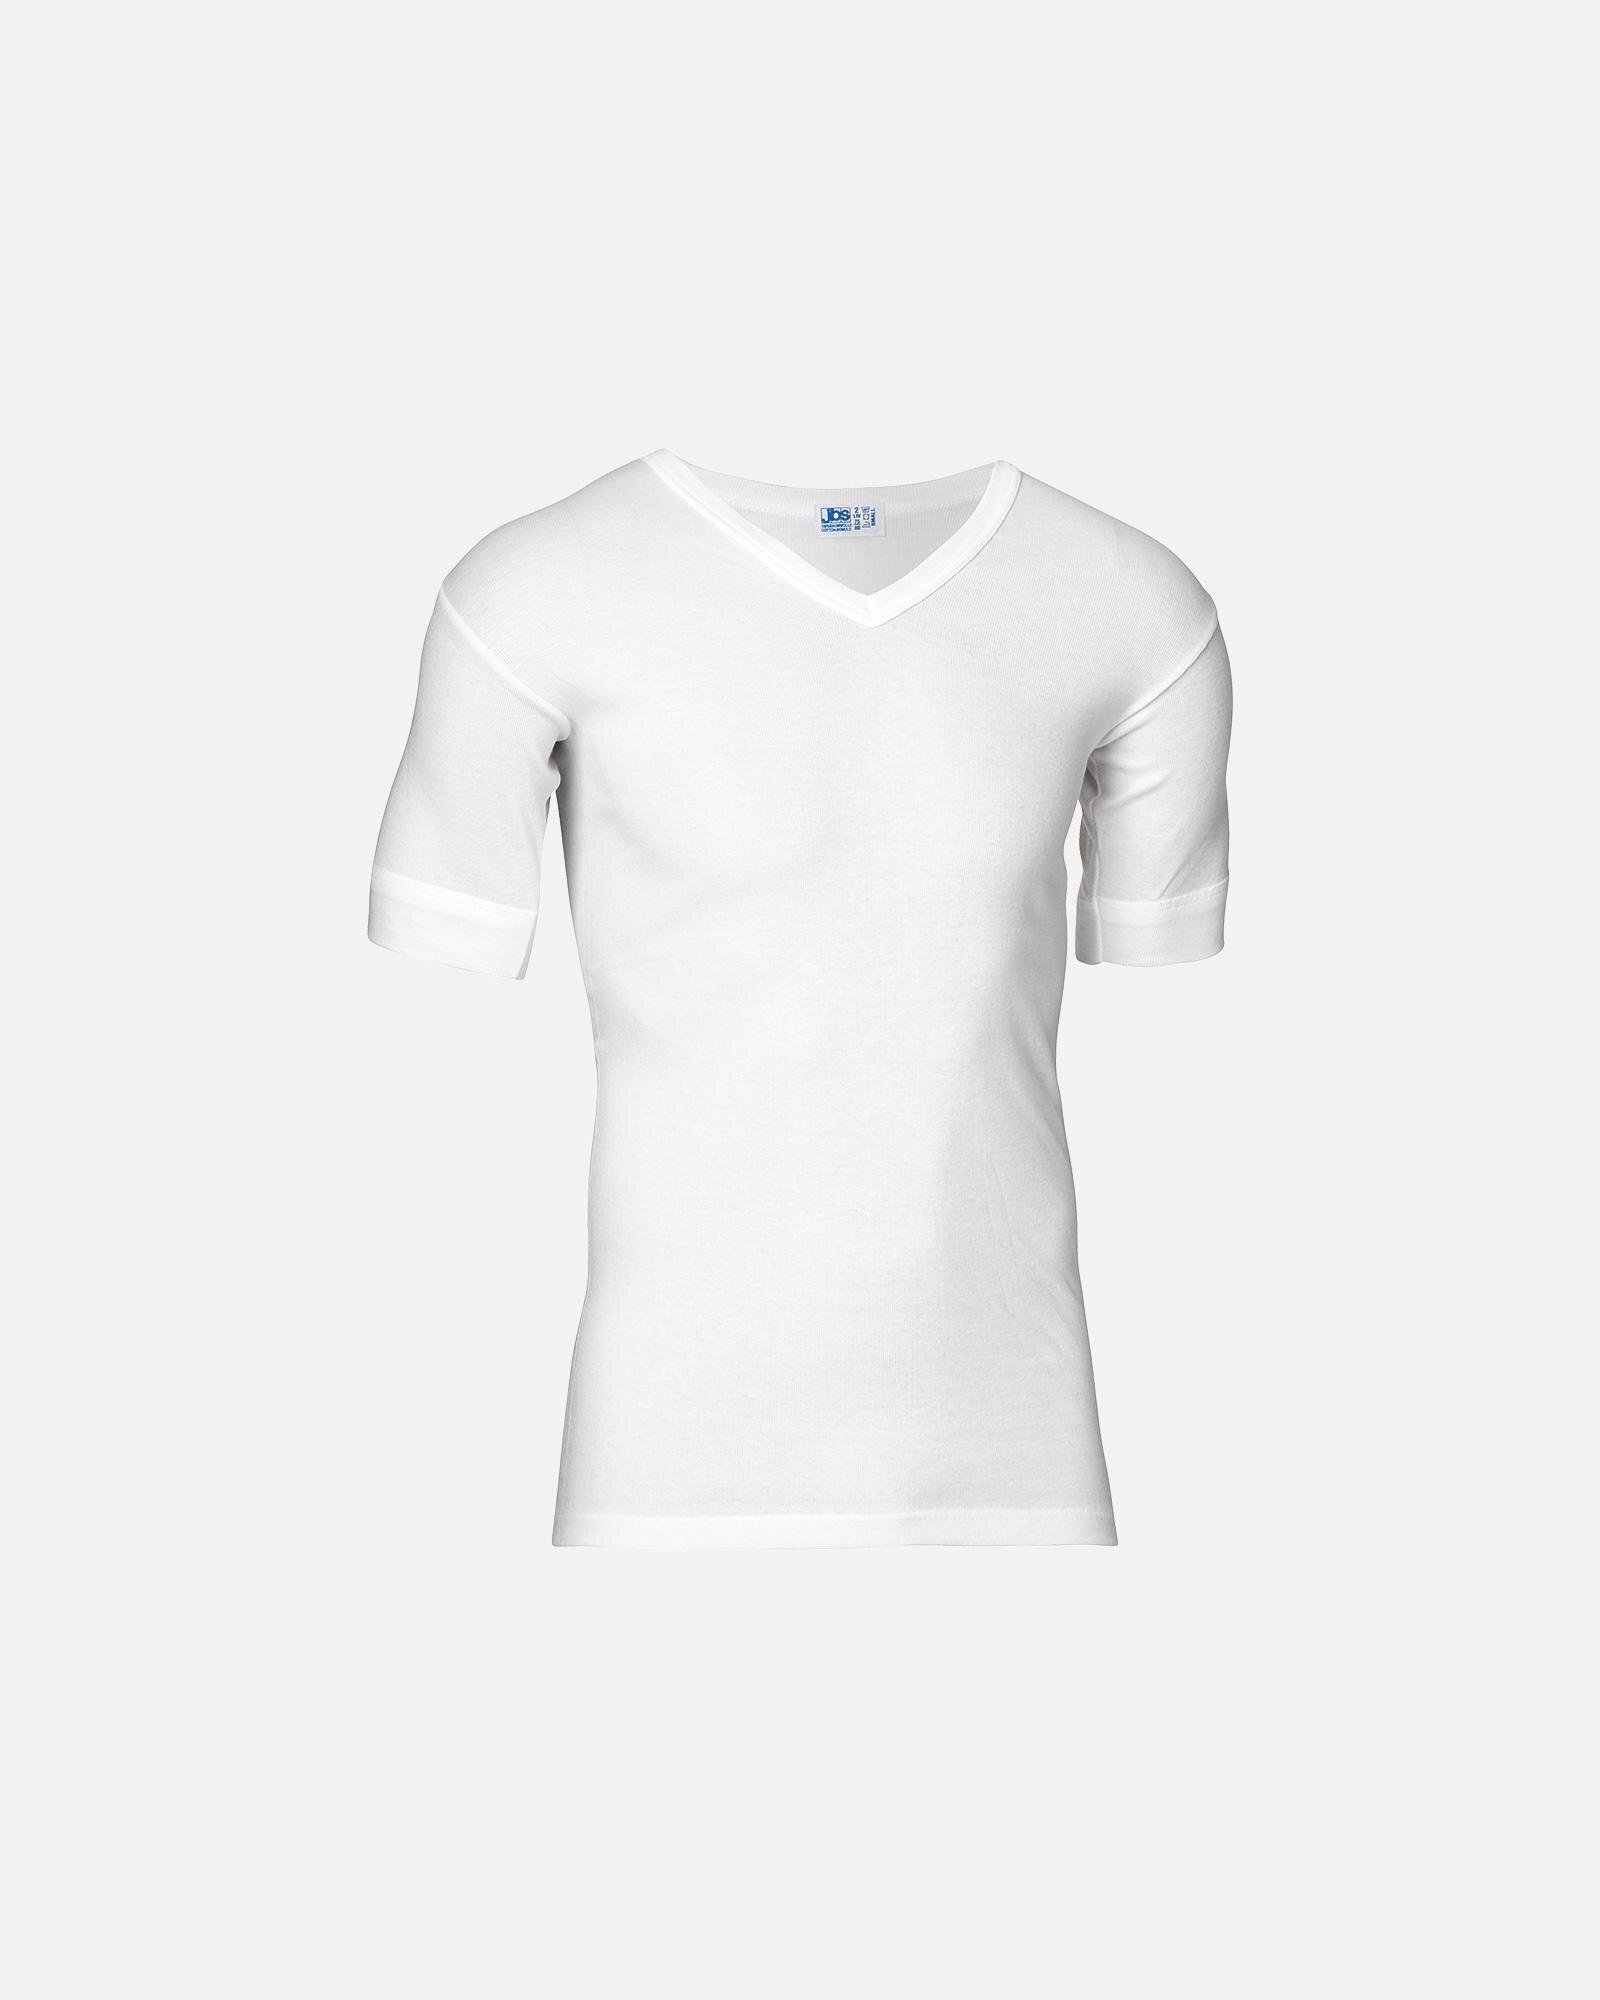 klap foredrag Også JBS Original T-shirt V-neck hvid - Køb hos Intimo.dk!